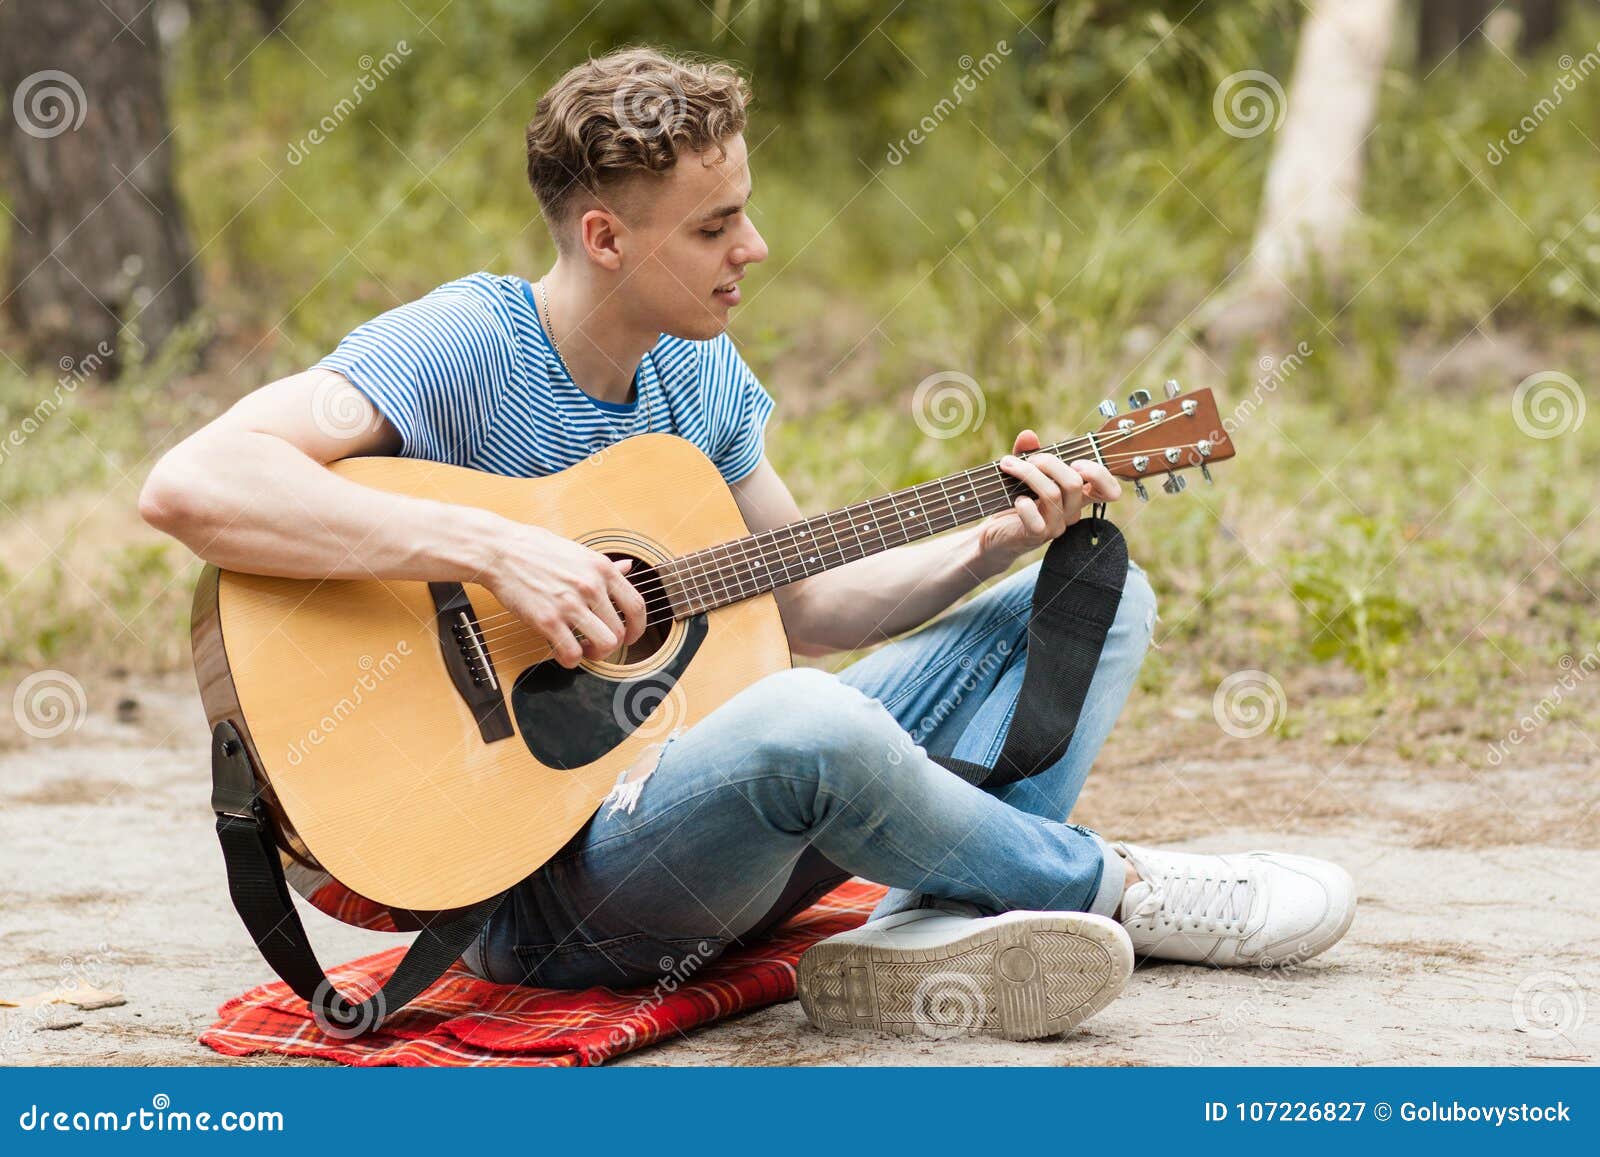 He can the guitar. Человек с гитарой. Парень с гитарой на природе. Человек с электрогитарой. Человек с гитарой в руках.